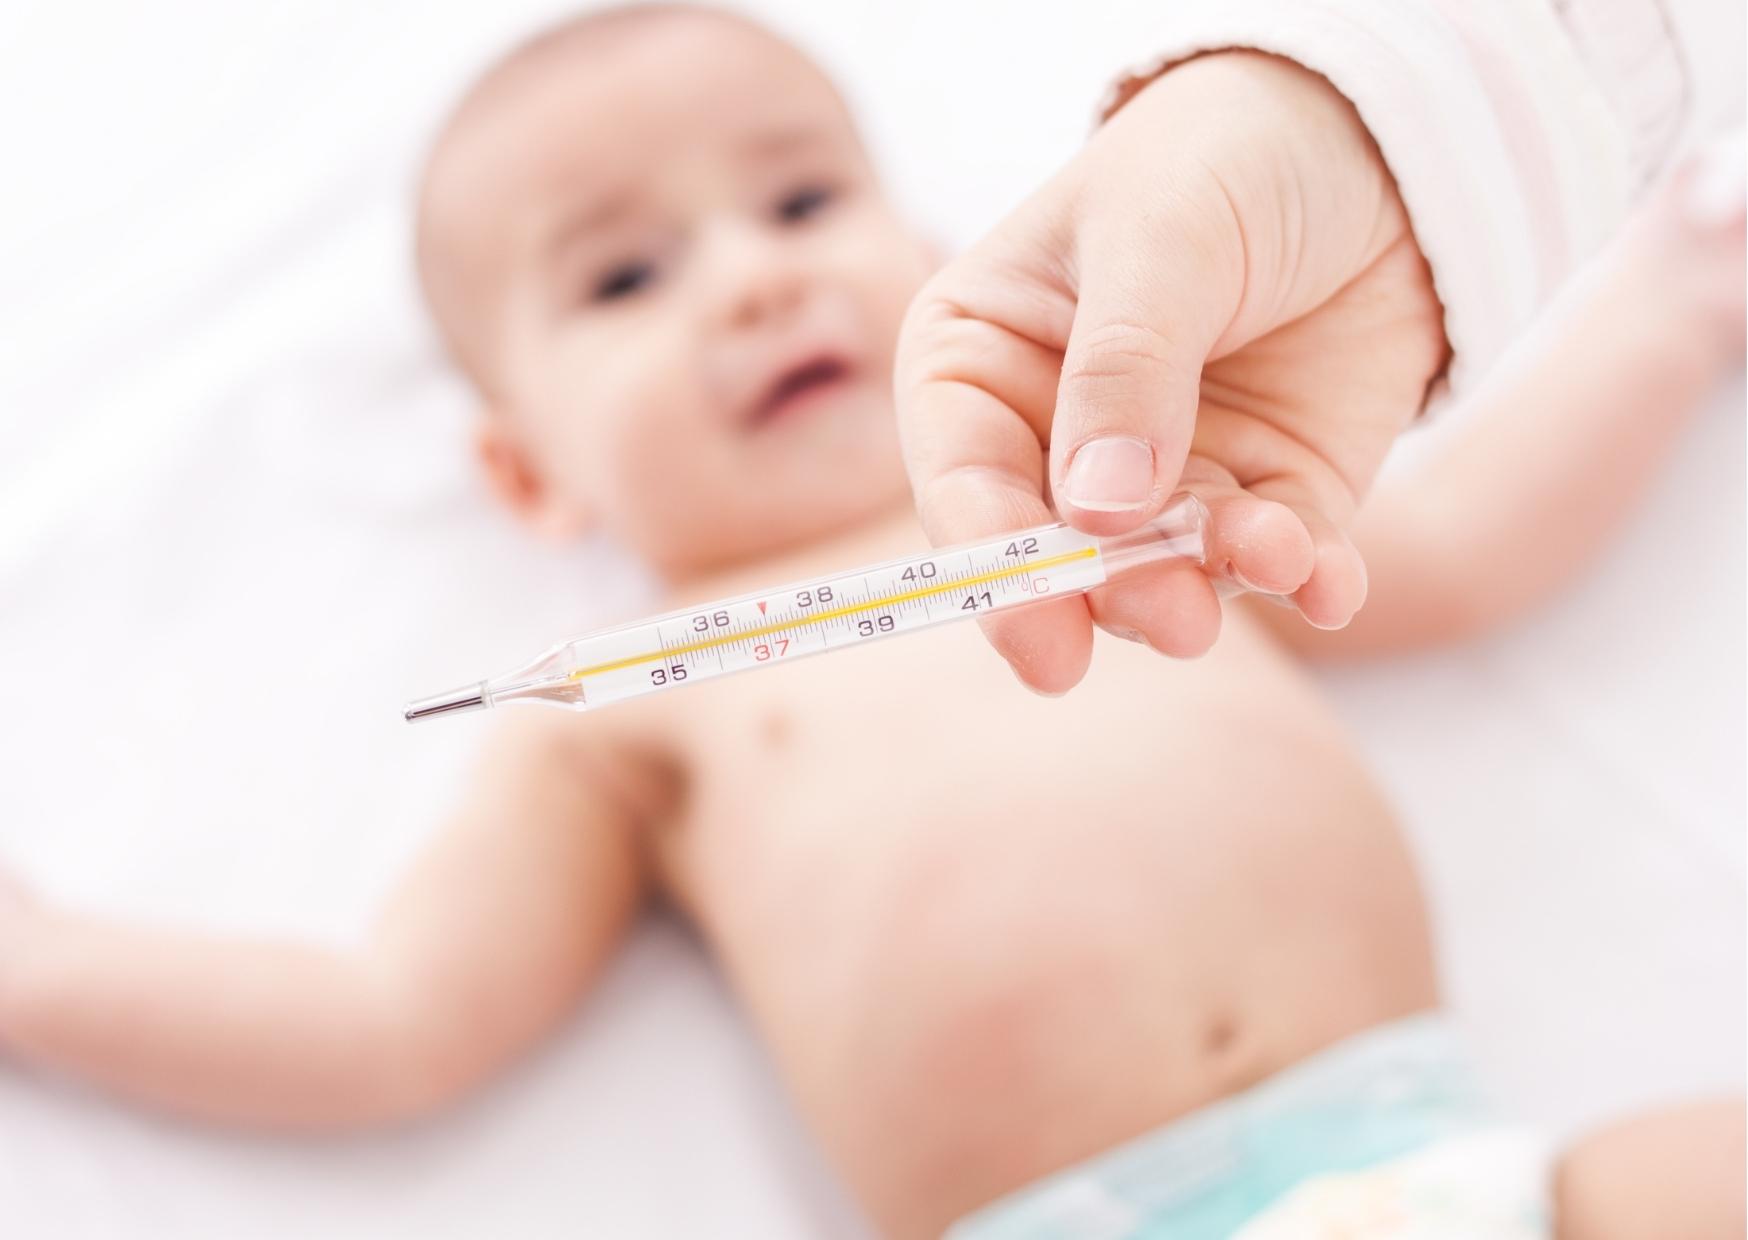 Drei-Tage-Fieber | Typische Erkrankung beim Säugling und Kleinkind ›  Info-Seite - medikamente-per-klick